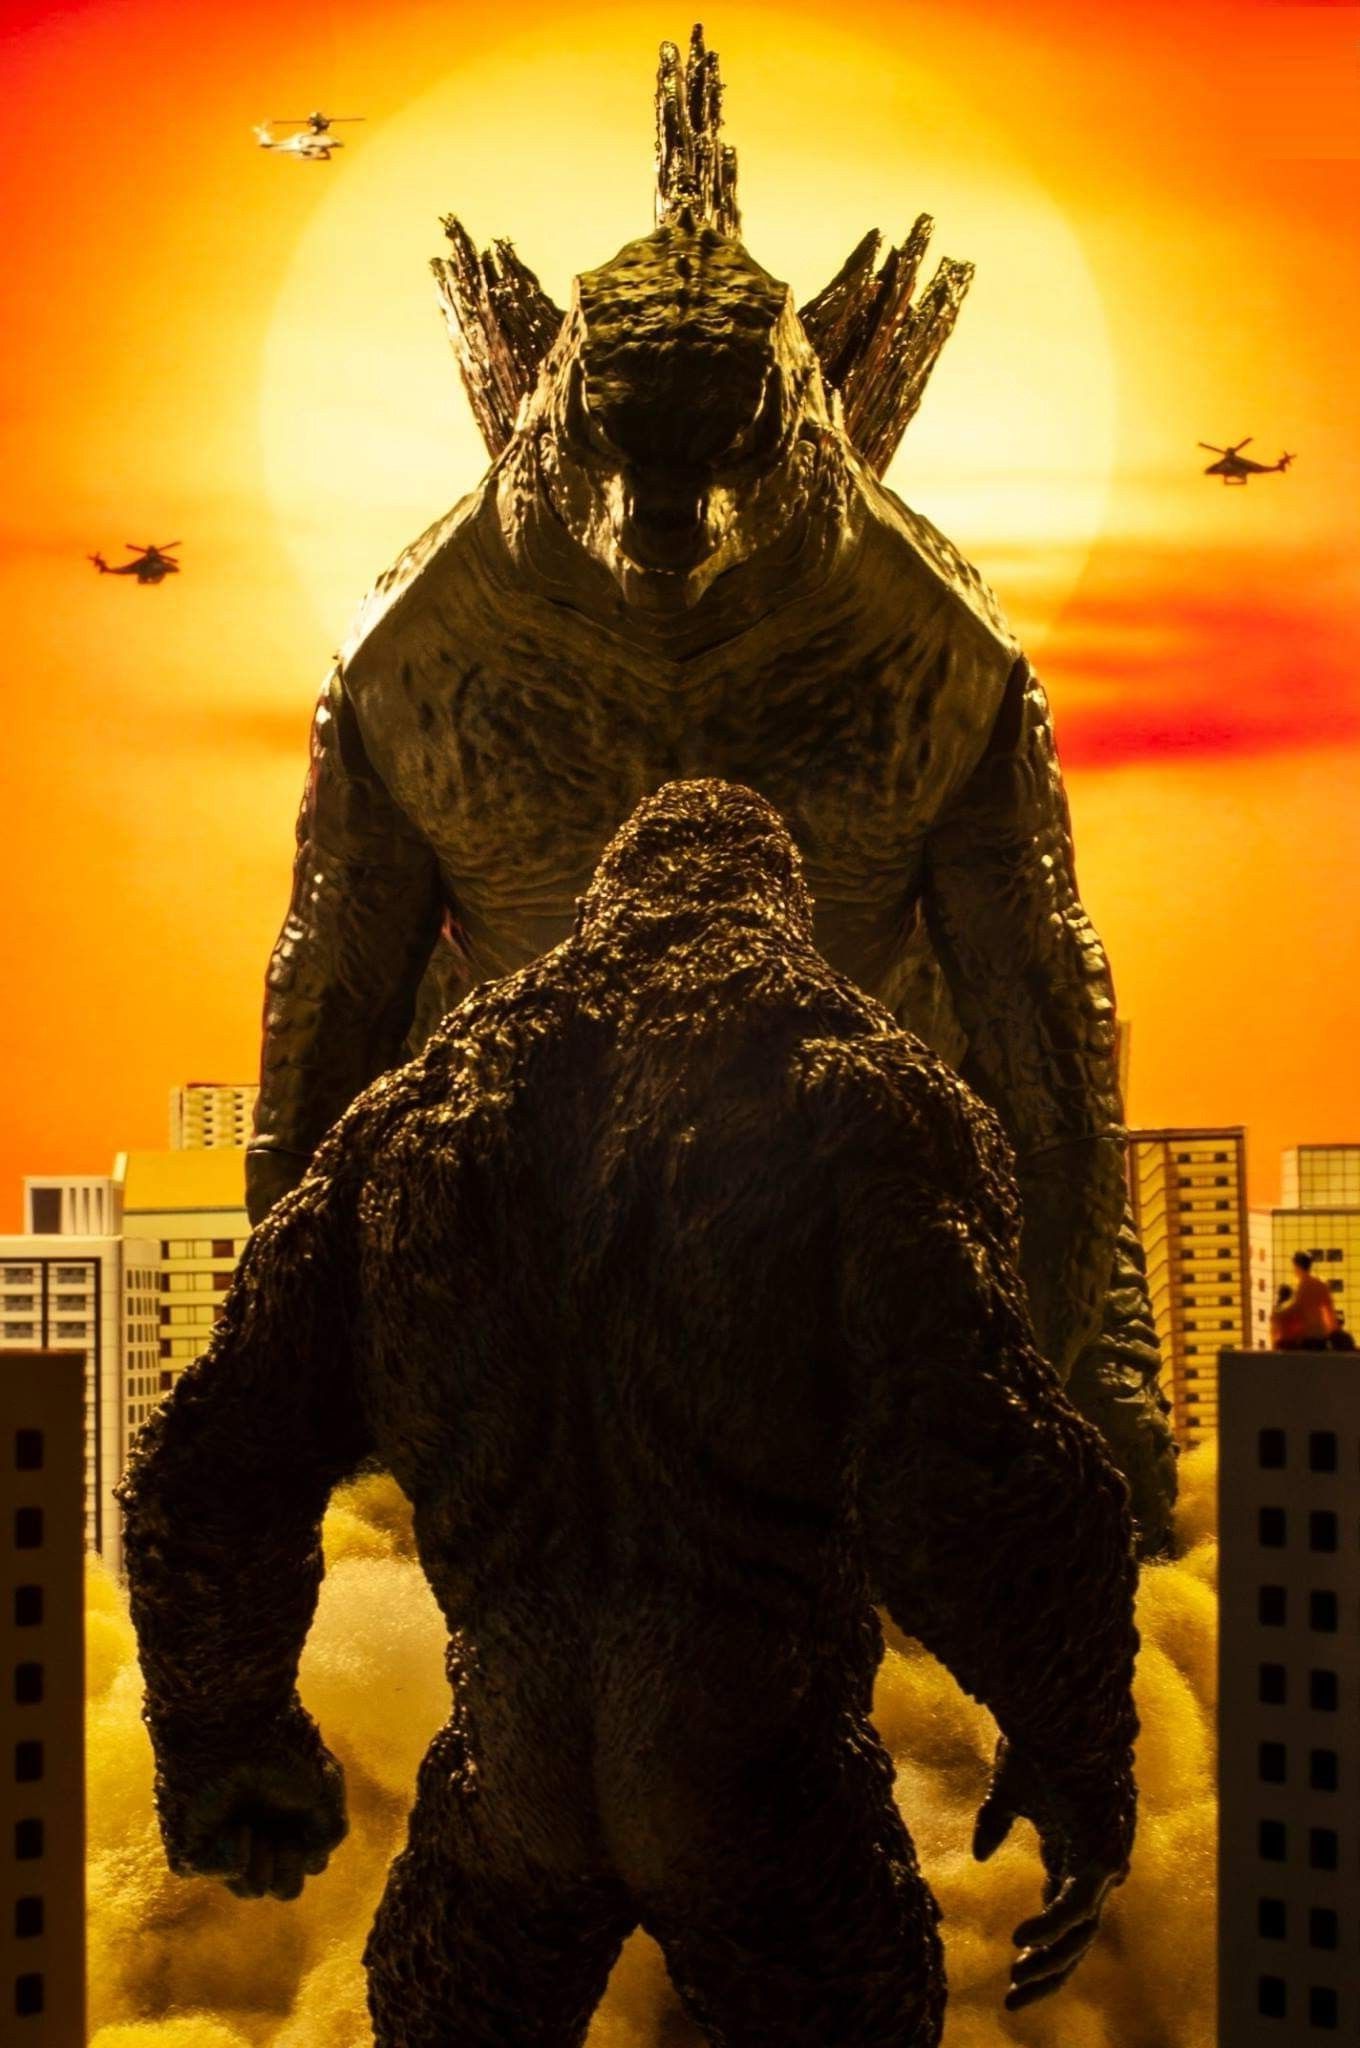 King Kong Vs Godzilla Background